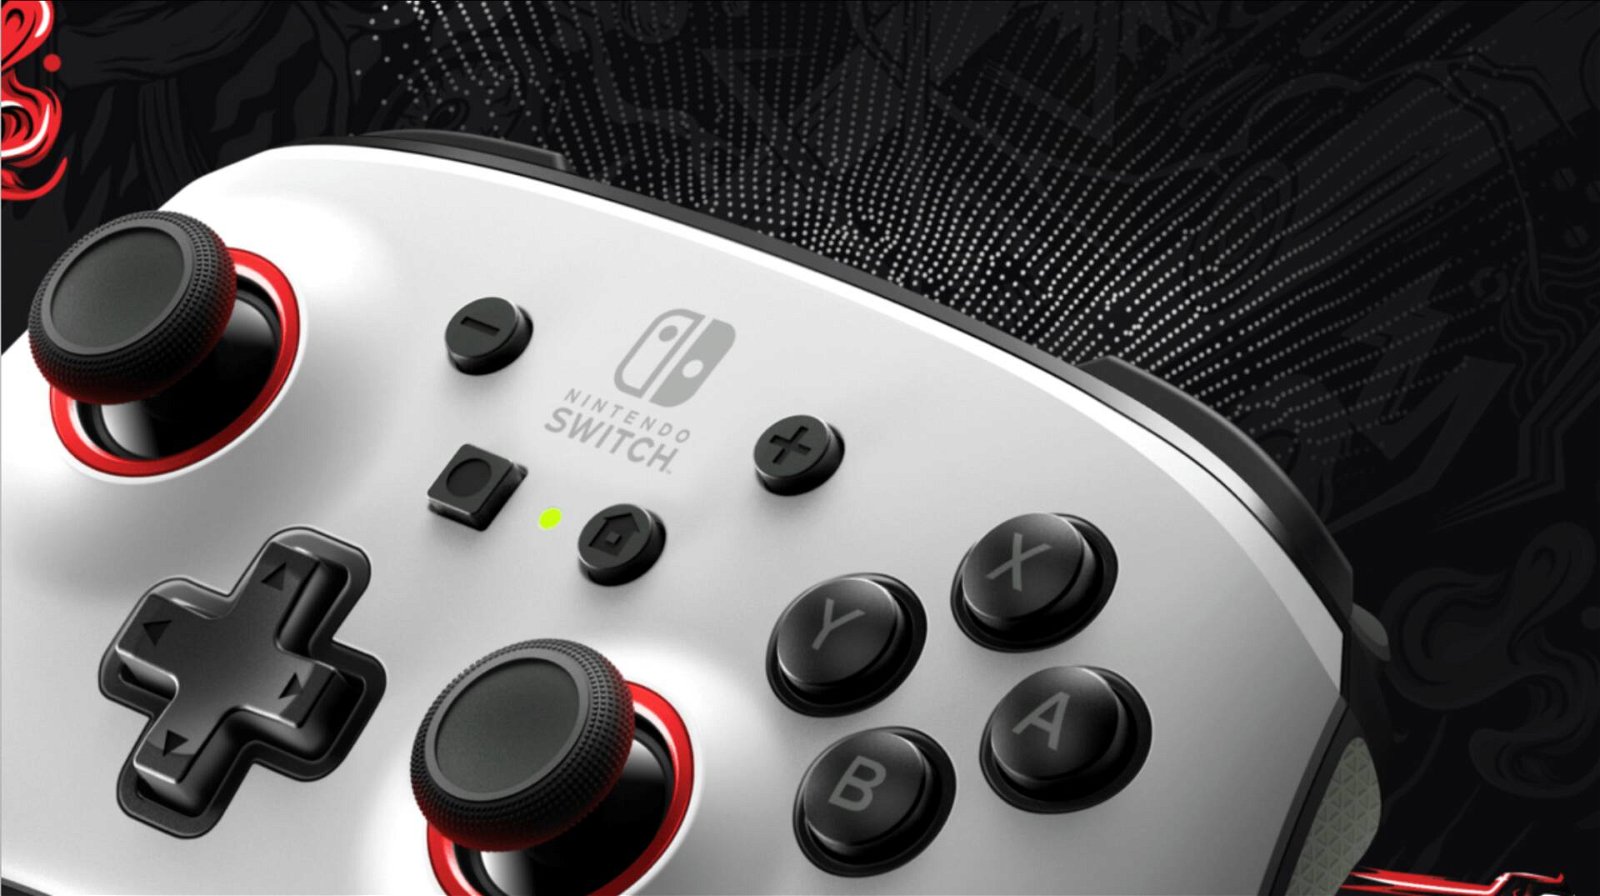 PowerA Fusion Pro è il controller definitivo per Nintendo Switch? | Recensione